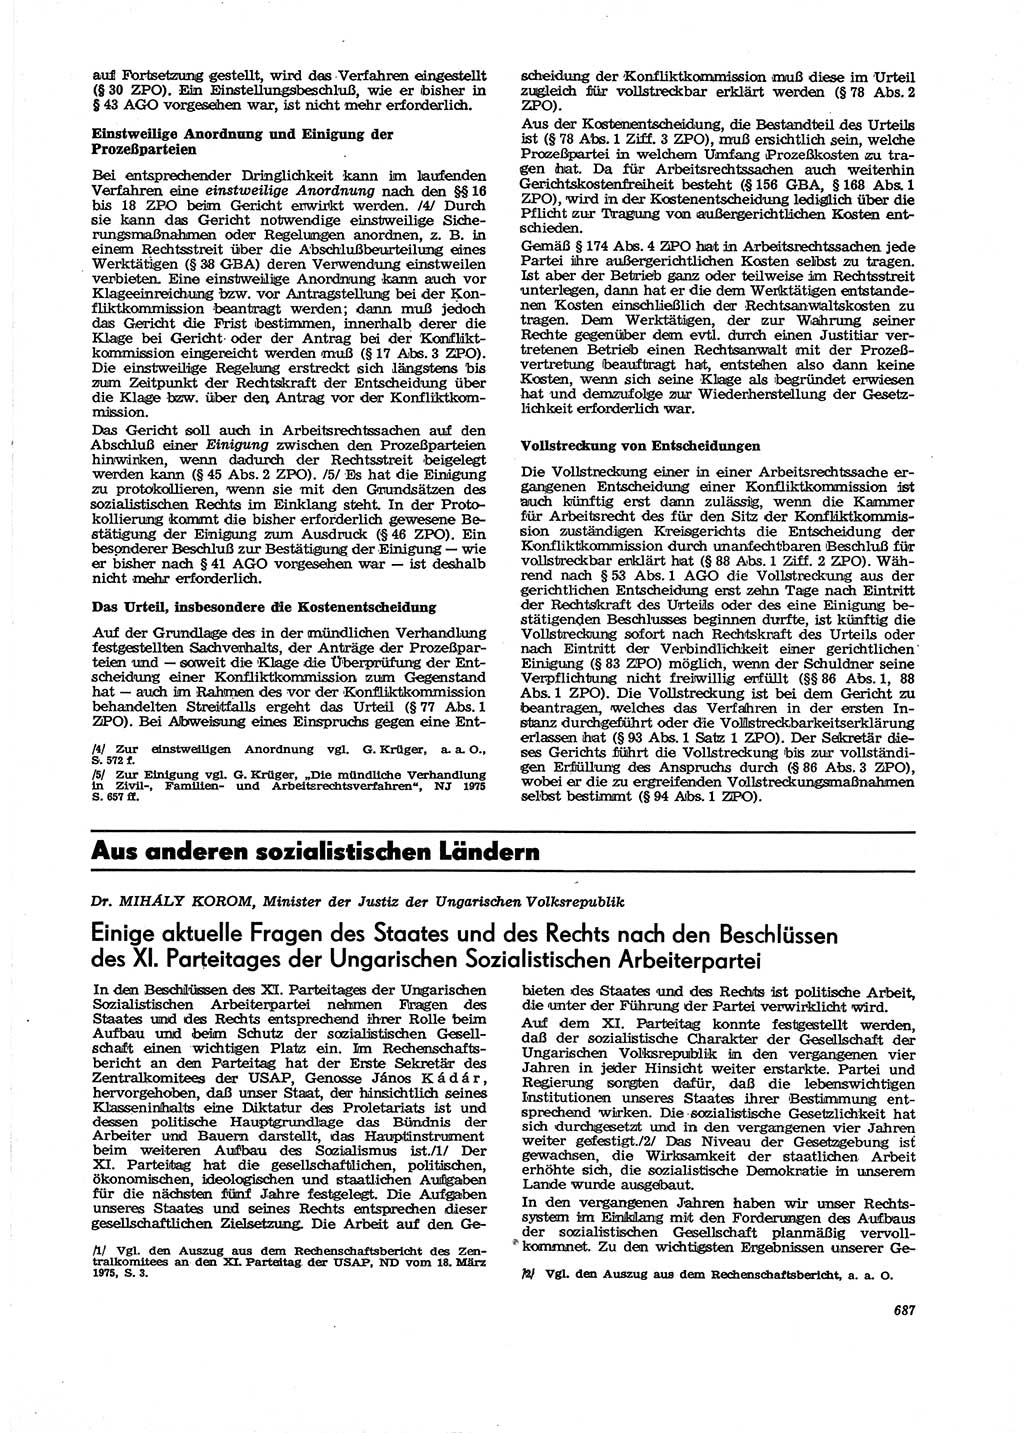 Neue Justiz (NJ), Zeitschrift für Recht und Rechtswissenschaft [Deutsche Demokratische Republik (DDR)], 29. Jahrgang 1975, Seite 687 (NJ DDR 1975, S. 687)